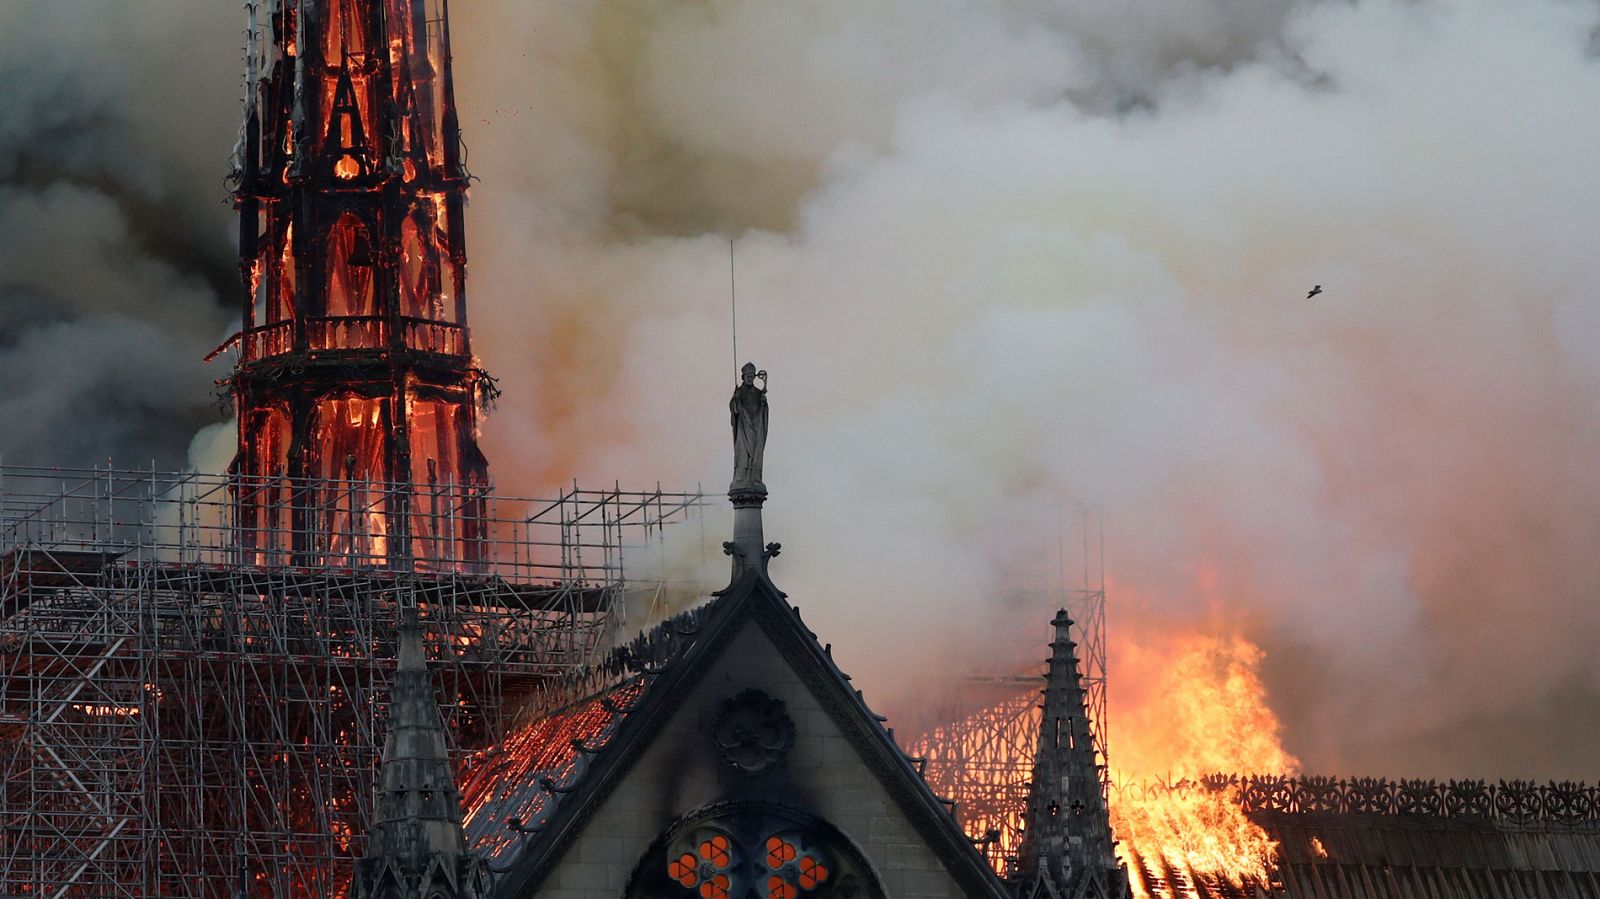 Incendio en Notre Dame | Así cayó la aguja de Notre Dame de París